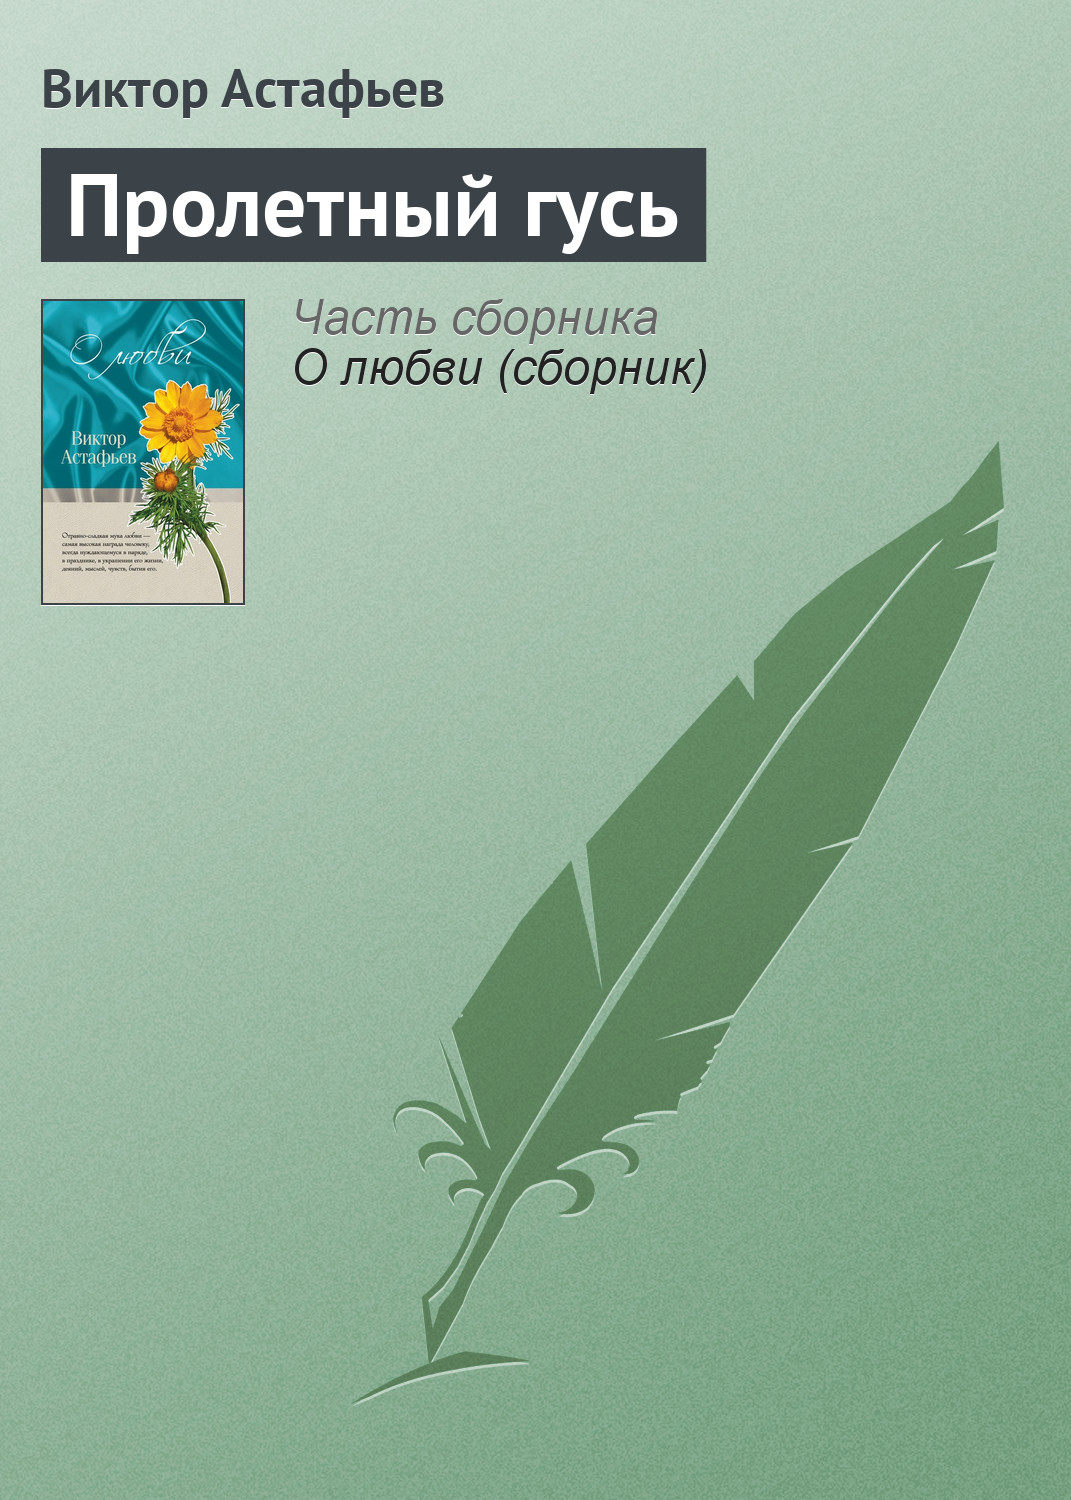 Пролетный гусь, Виктор Астафьев – скачать книгу fb2, epub, pdf на Литрес